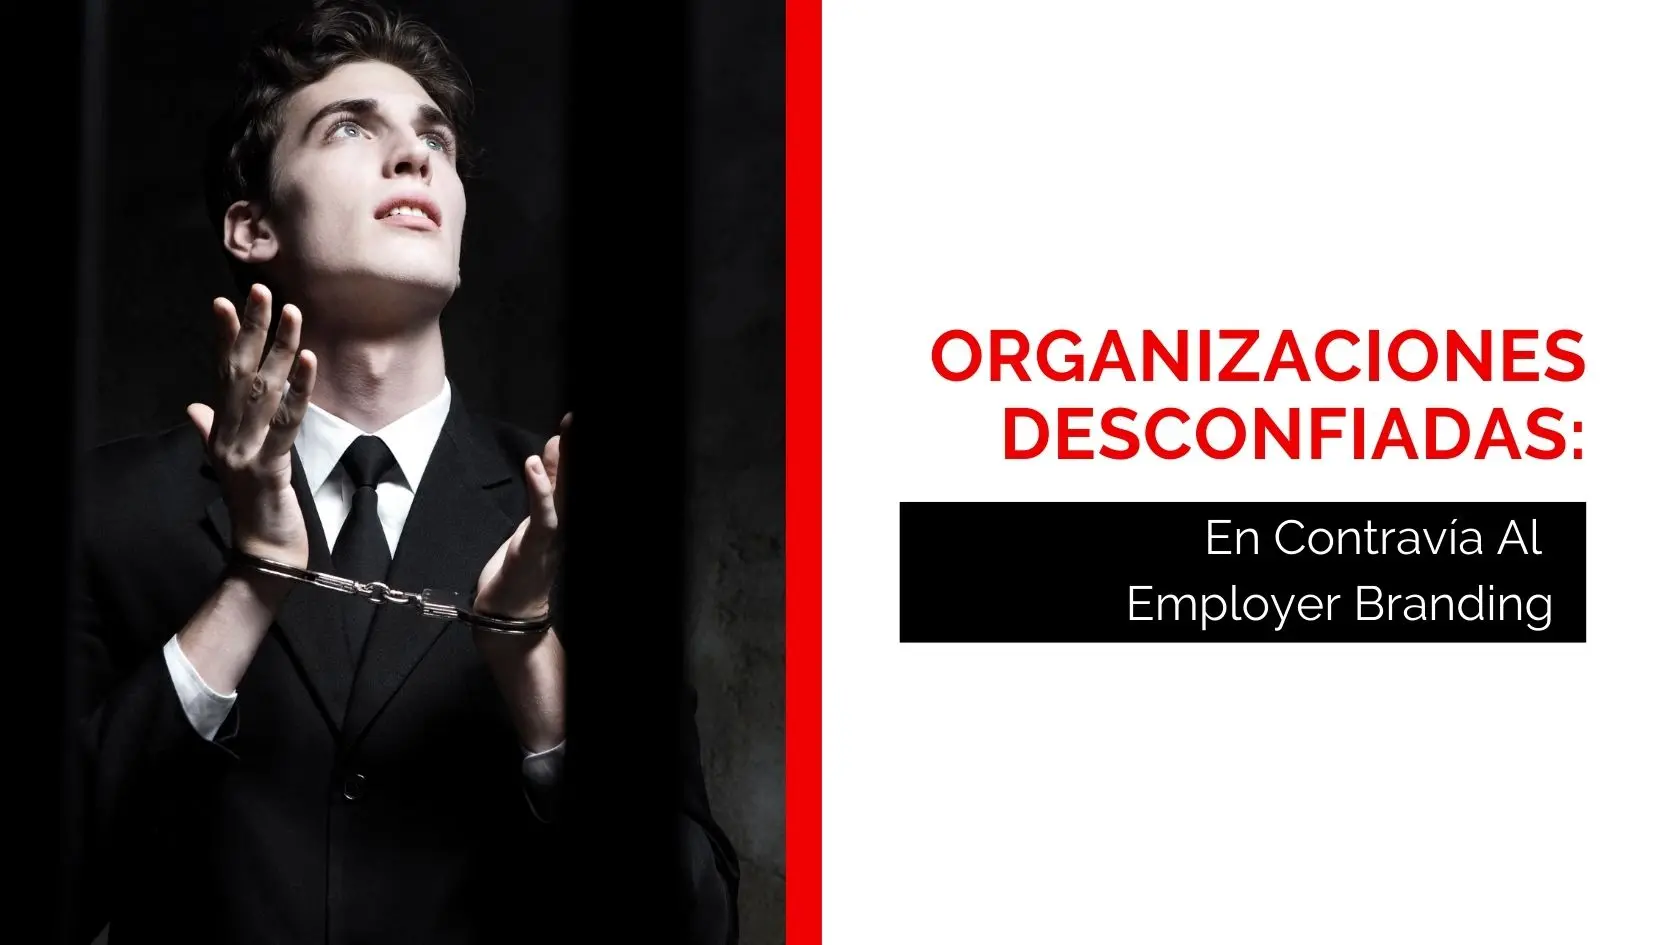 Héctor-Jimenez-Organizaciones-Desconfiadas-En-Contravía-Al-Employer-Branding-final-1